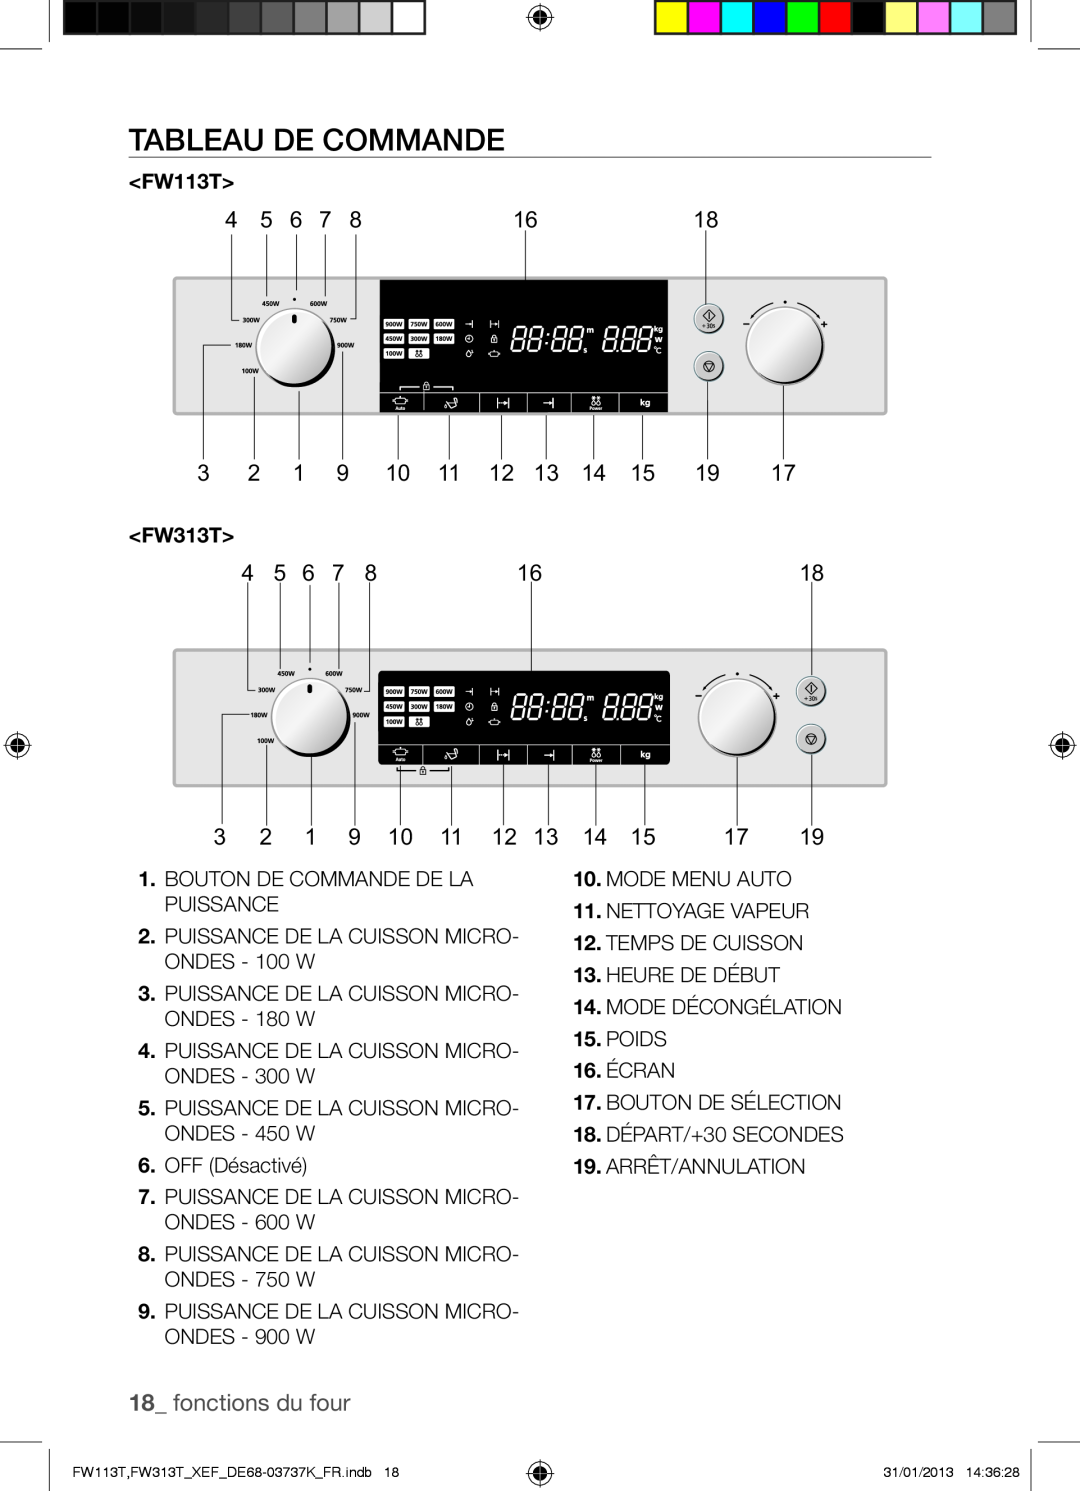 Samsung FW113T002/XEF manual Tableau De Commande, fonctions du four 